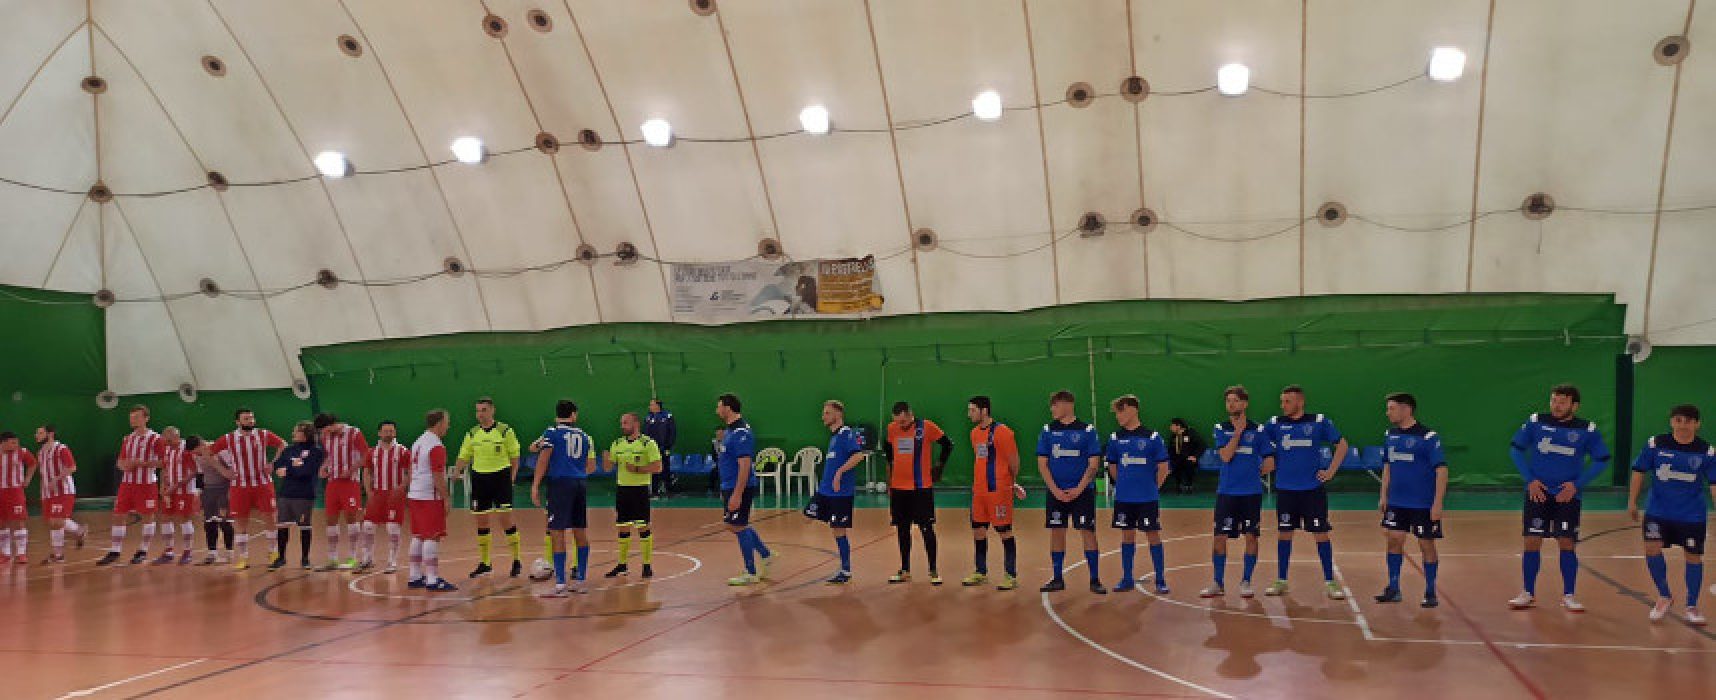 Futbol Cinco raggiunto nel finale dell’Eraclio, Nettuno ko di misura in C2